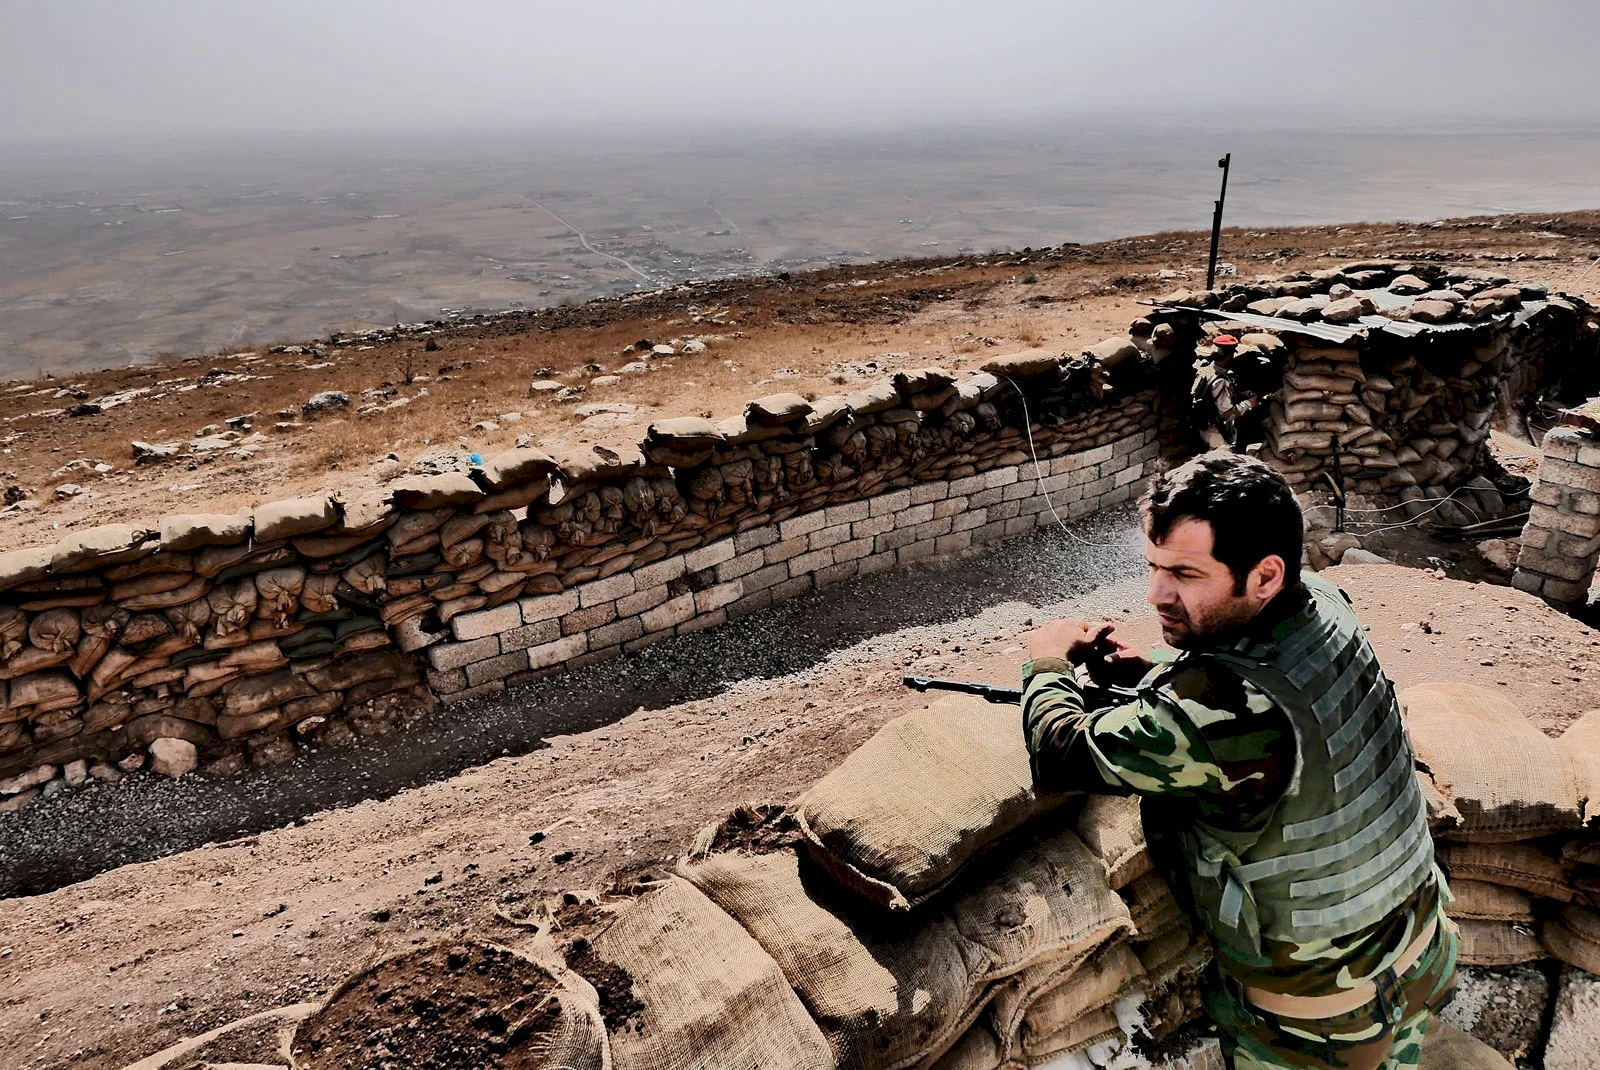 Photo du film : Peshmerga